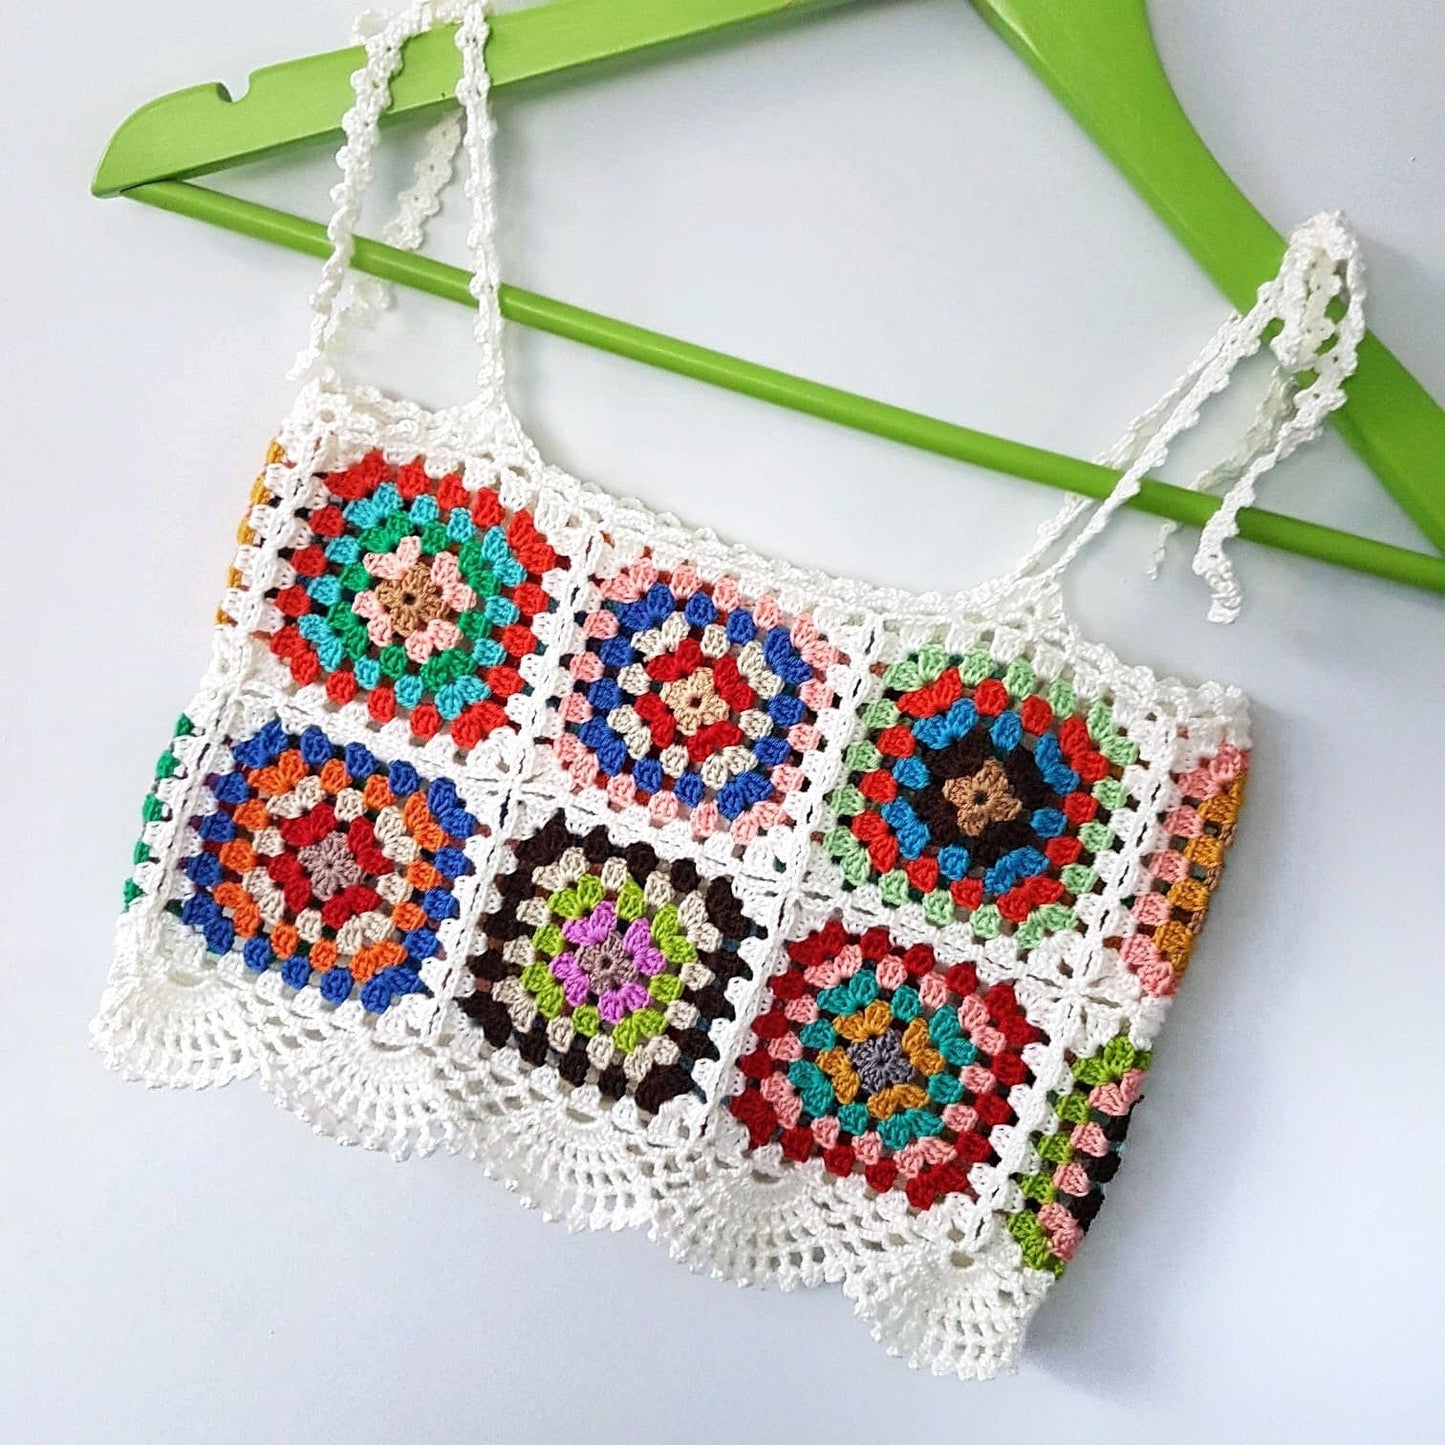 Retro Granny Square Handknitted Crochet Top